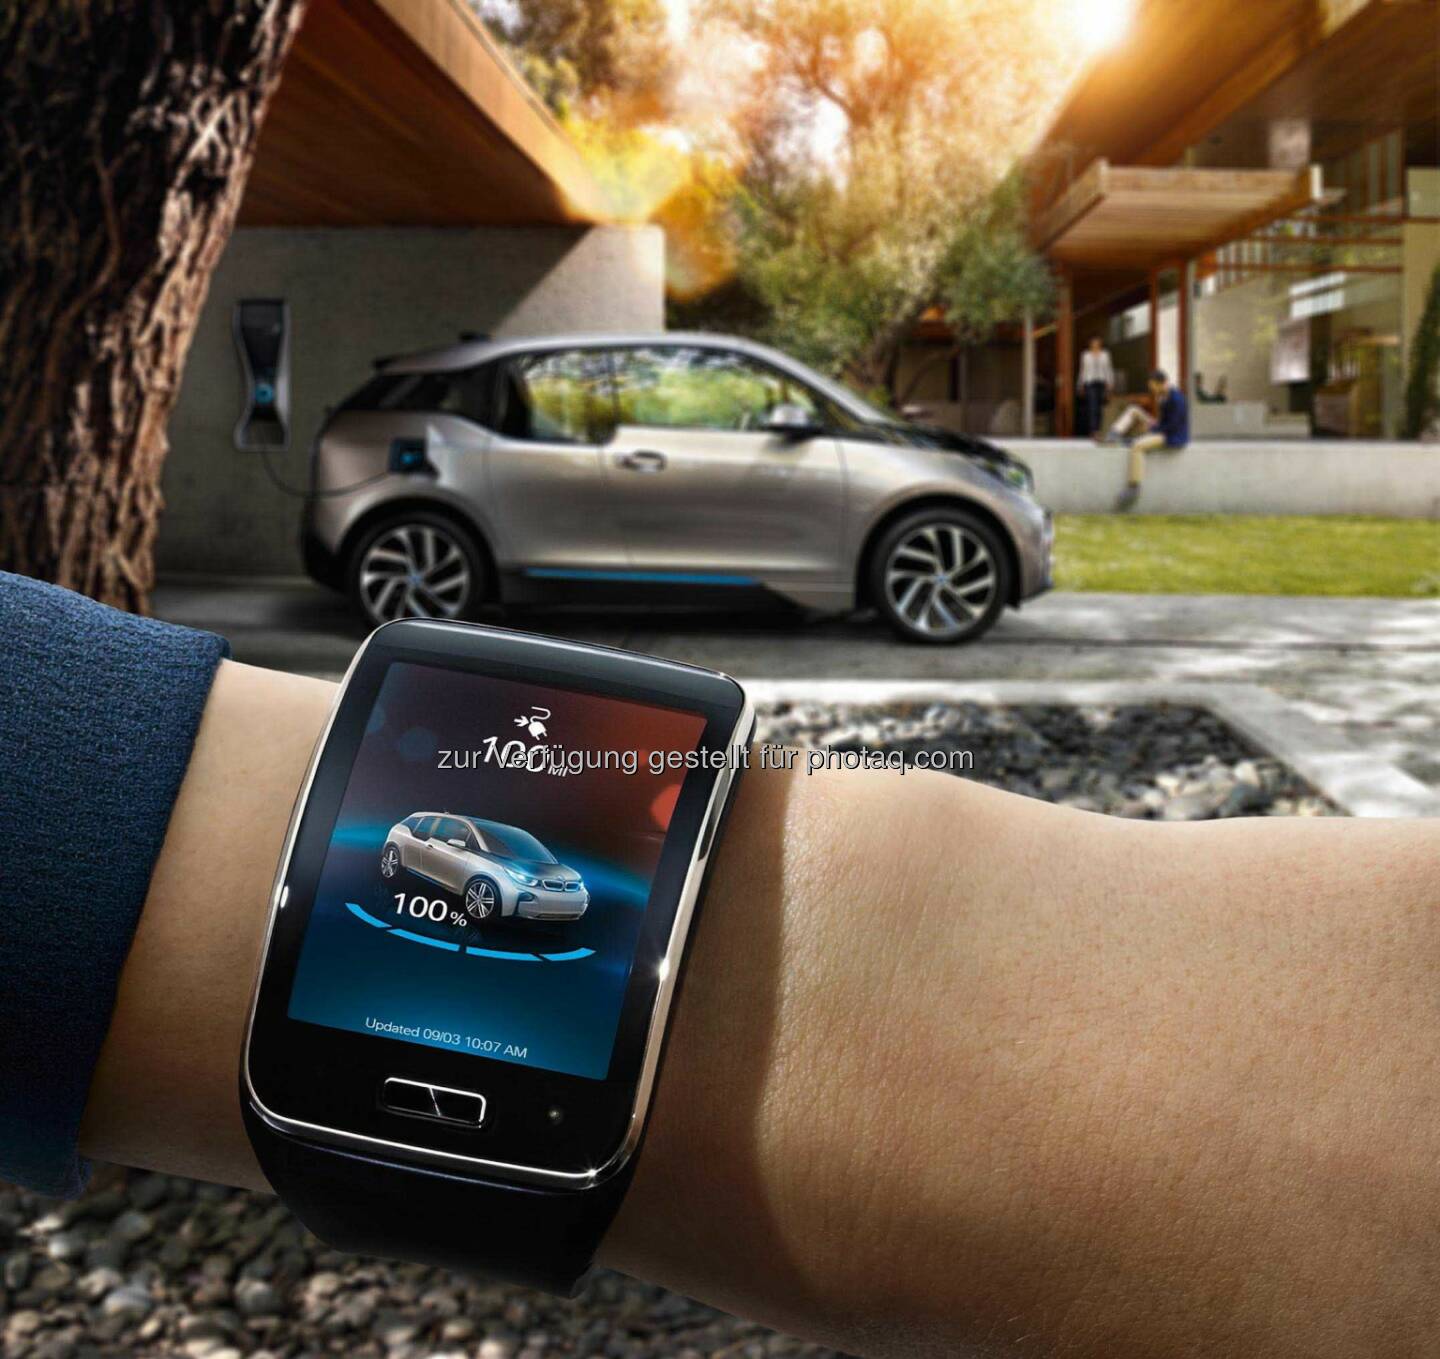 BMW i Remote App bei den CES Innovation Awards 2015 ausgezeichnet. Über die Smartwatch Samsung Gear S mit BMW i Fahrzeugen verbunden.